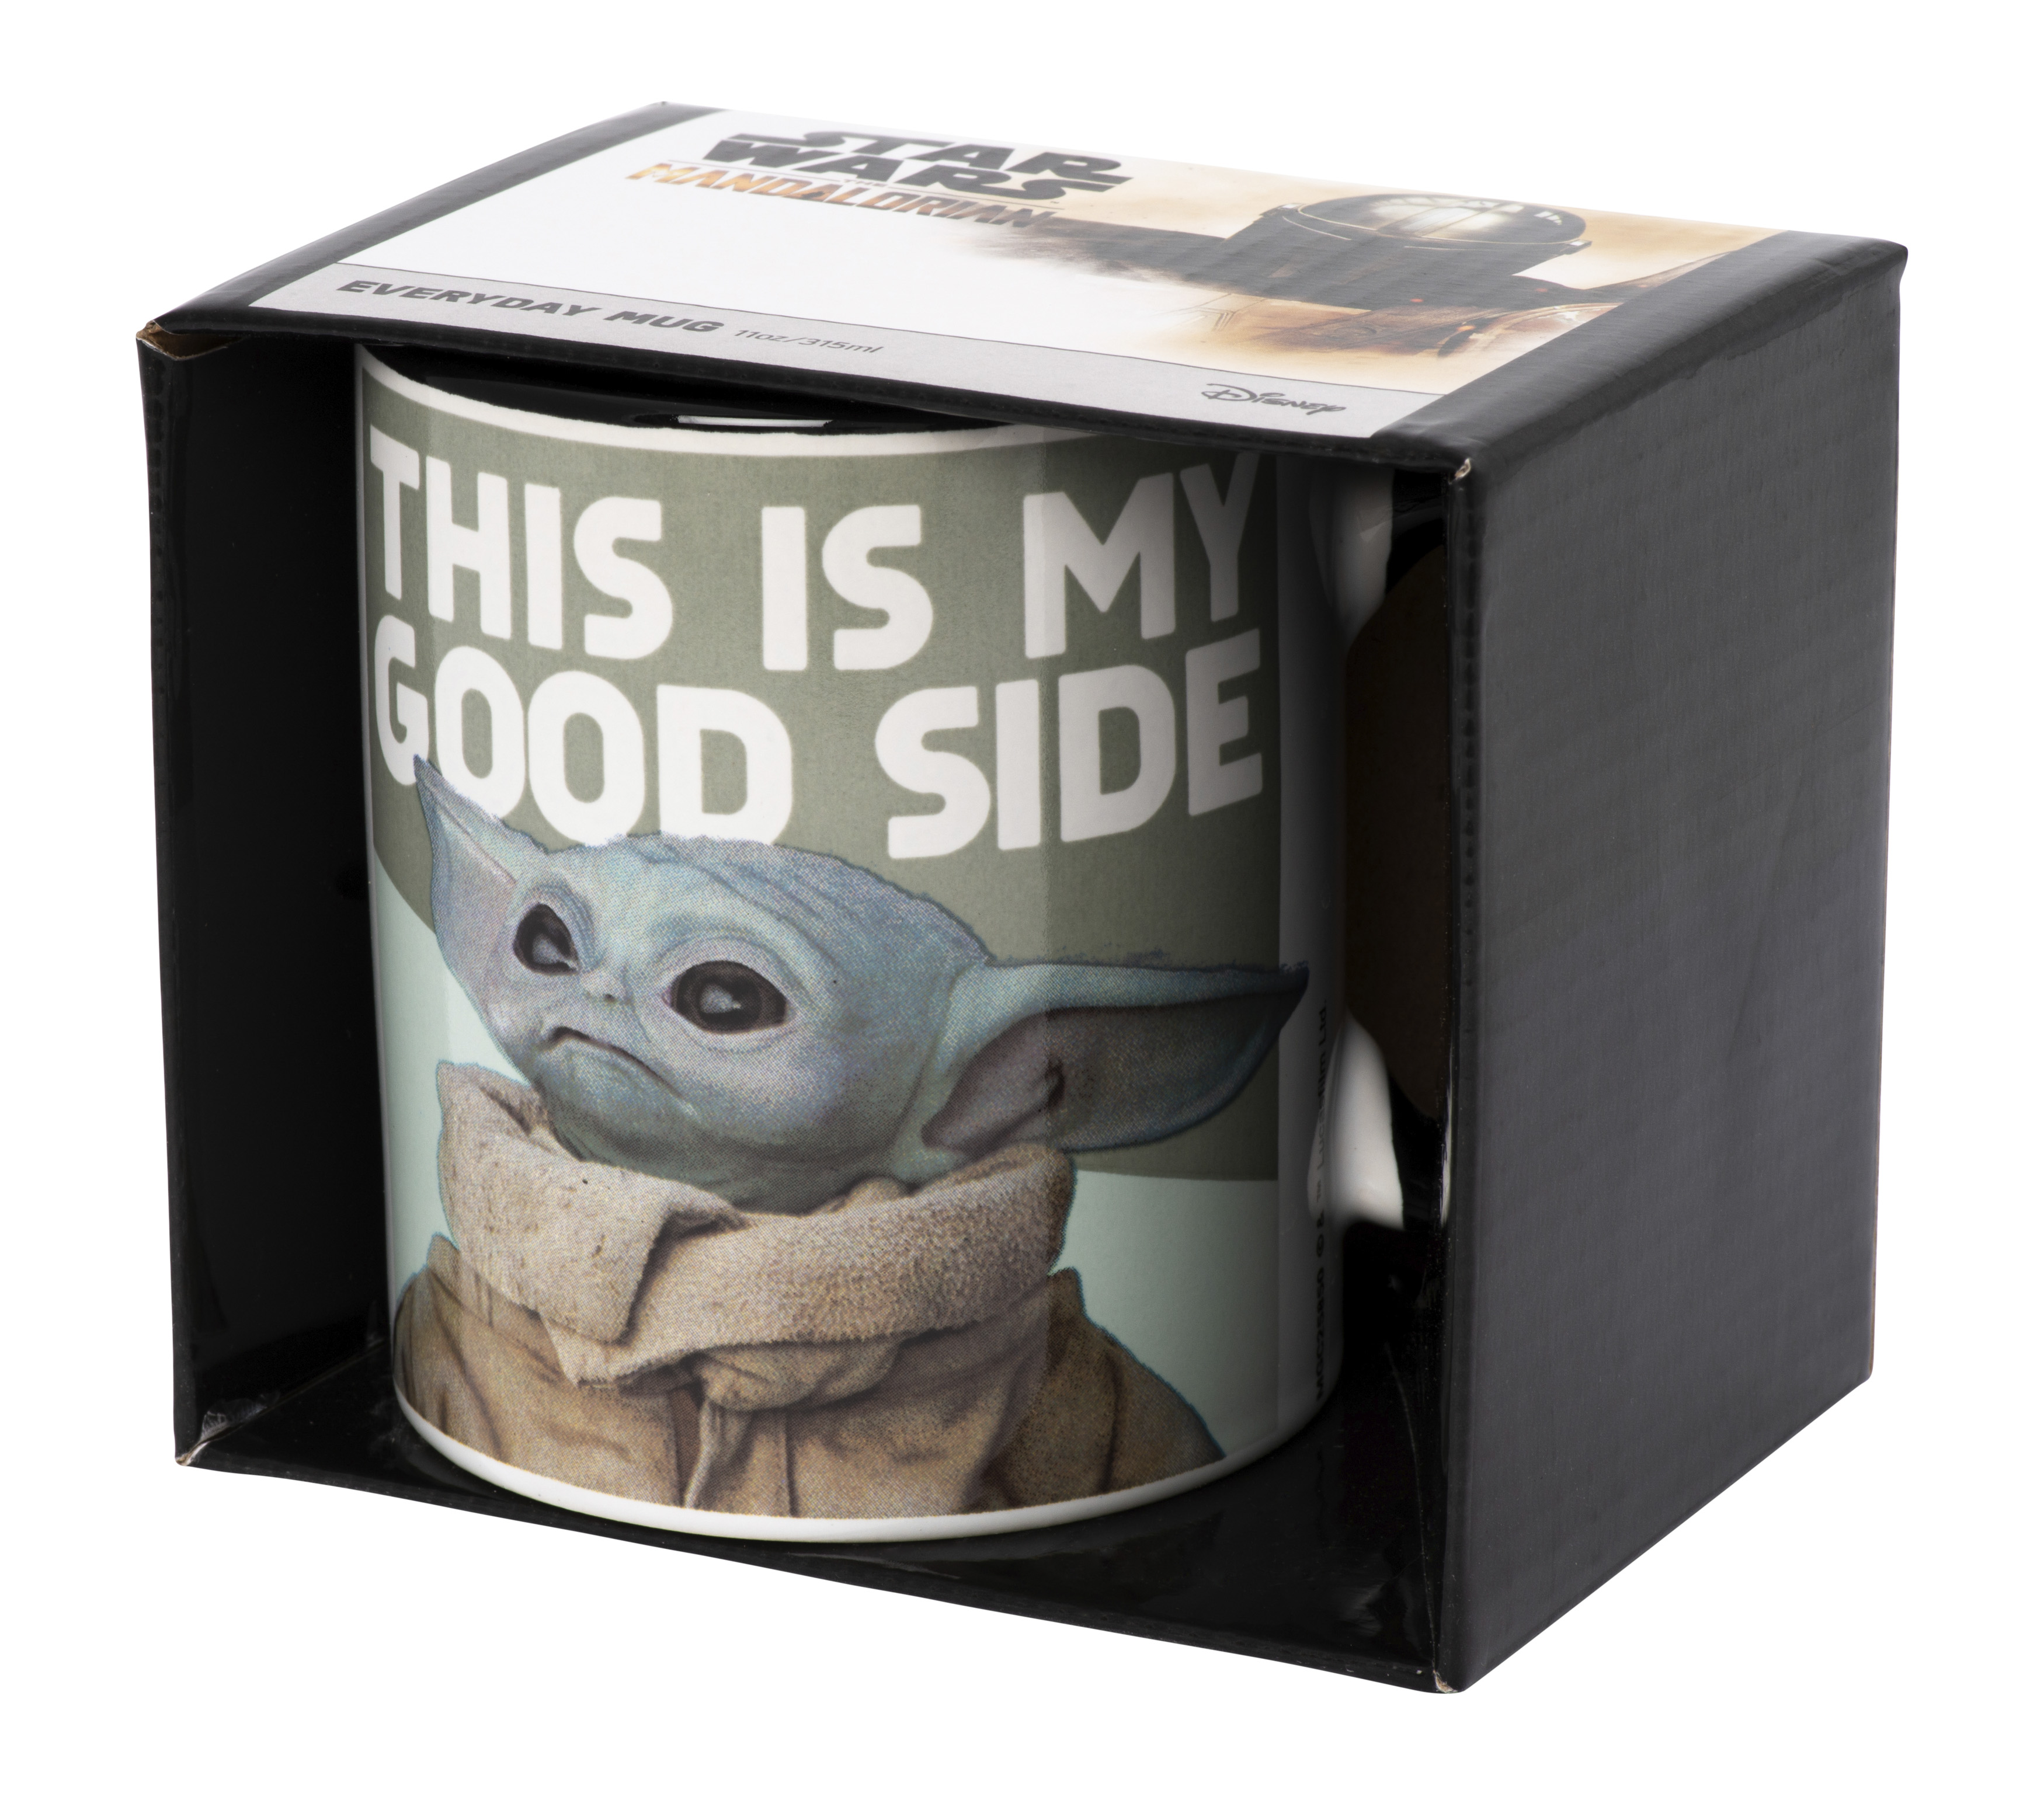 Tasse koloriert - Star Wars - Baby Yoda (Good Side)